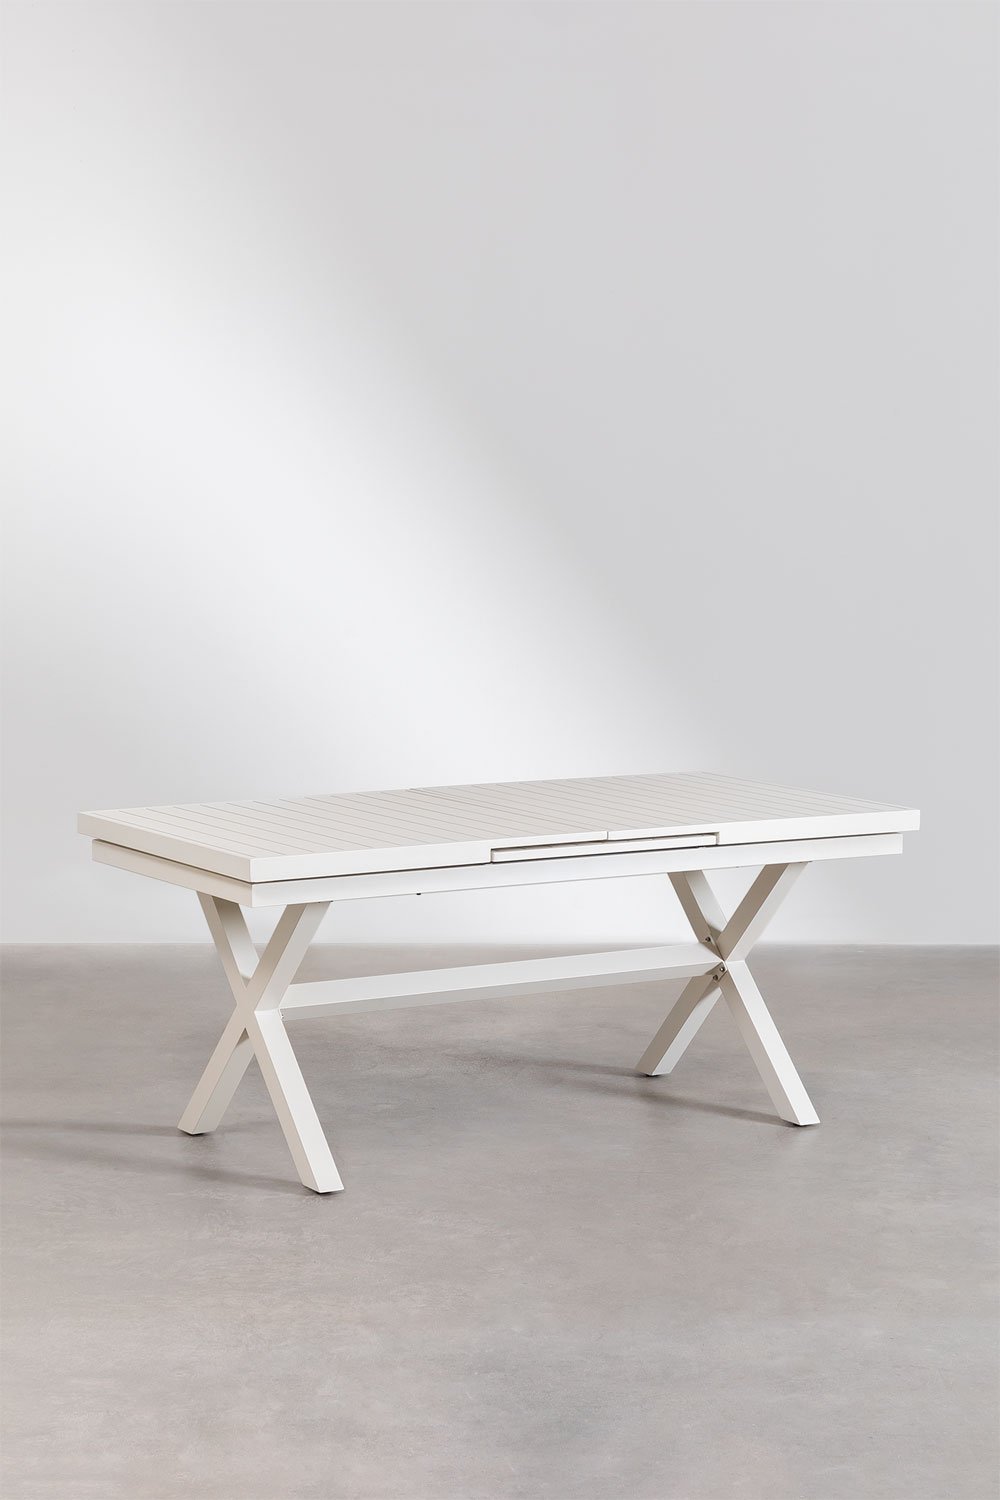 Tavolo da pranzo allungabile rettangolare in alluminio (180-240x90 cm) Karena, immagine della galleria 1